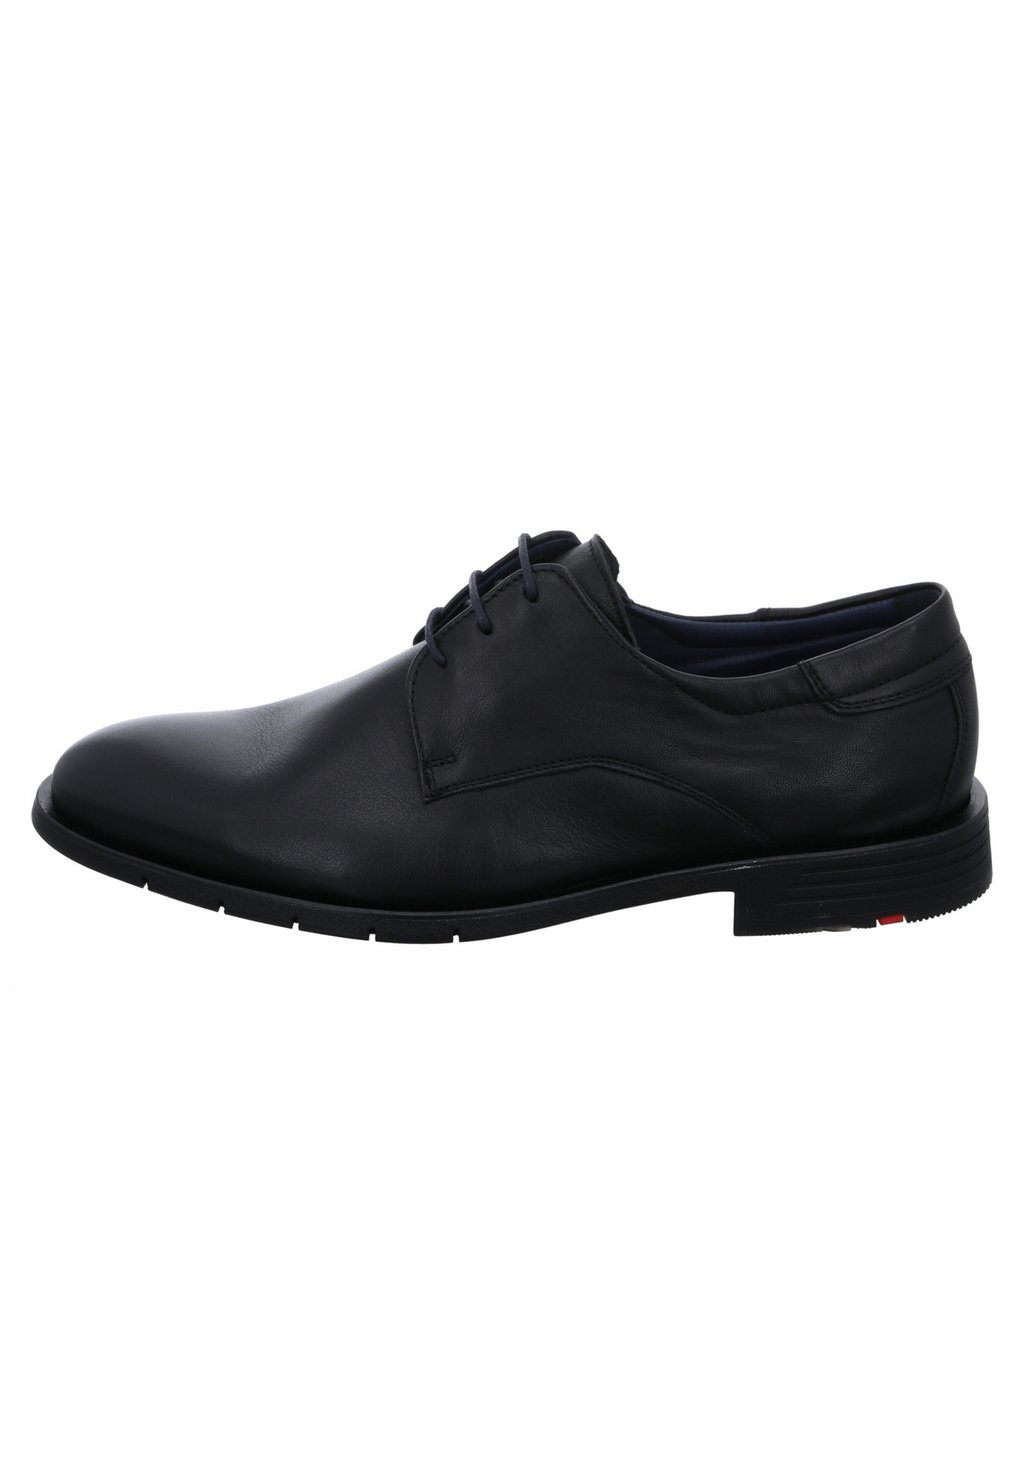 Элегантные туфли на шнуровке Tambo Lloyd, цвет schwarz dunkel кроссовки skechers d´lux walker schwarz dunkel